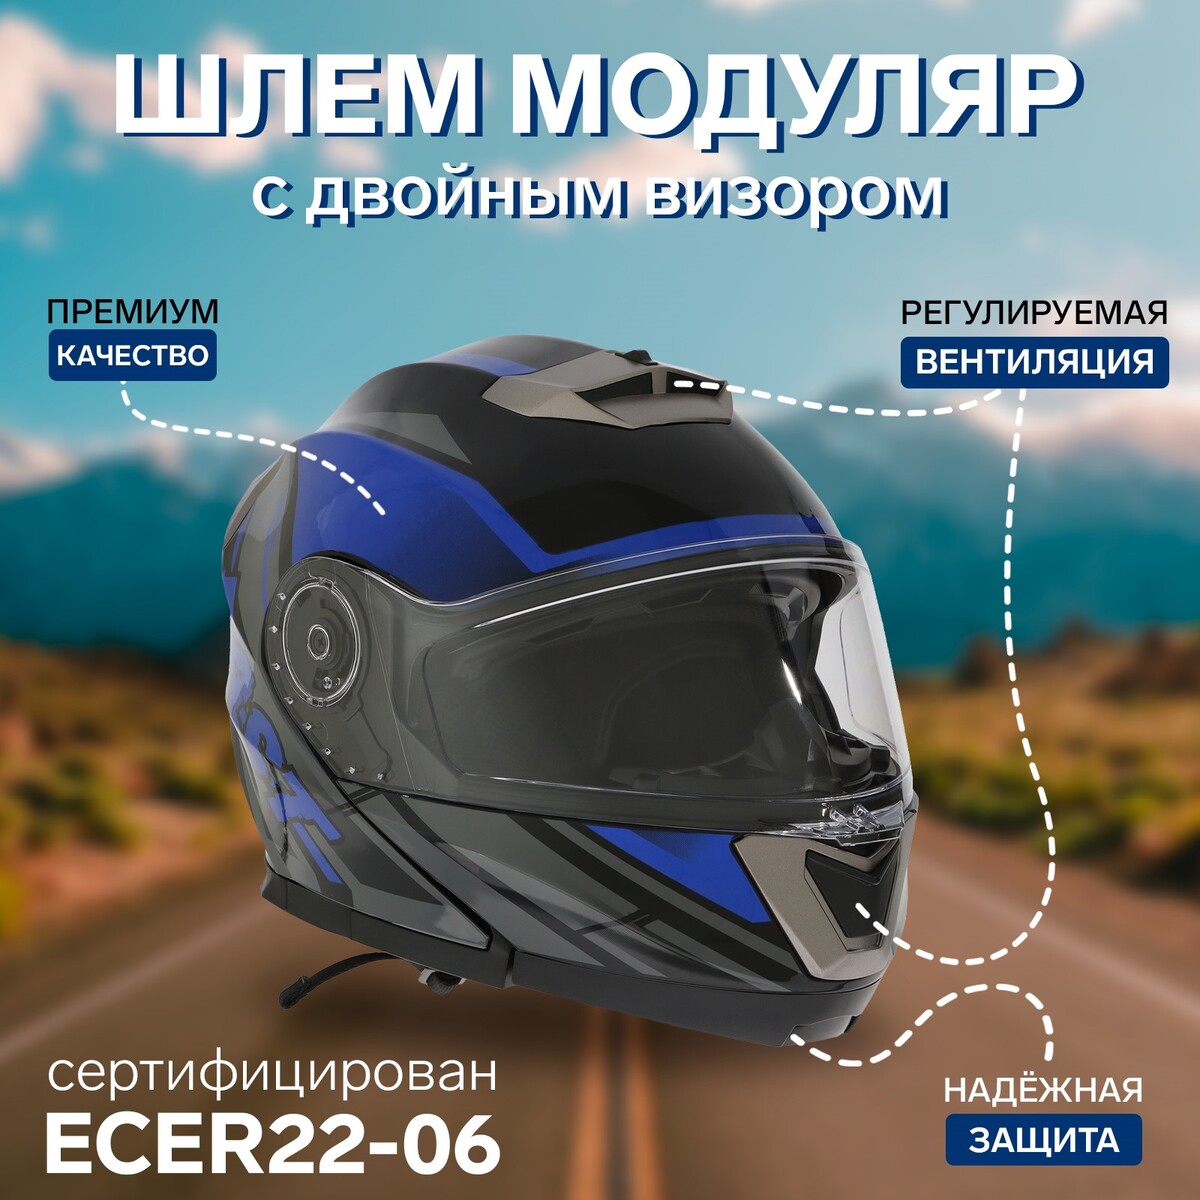 Шлем модуляр с двумя визорами, размер xxl (61), модель - bld-160e, черно-синий